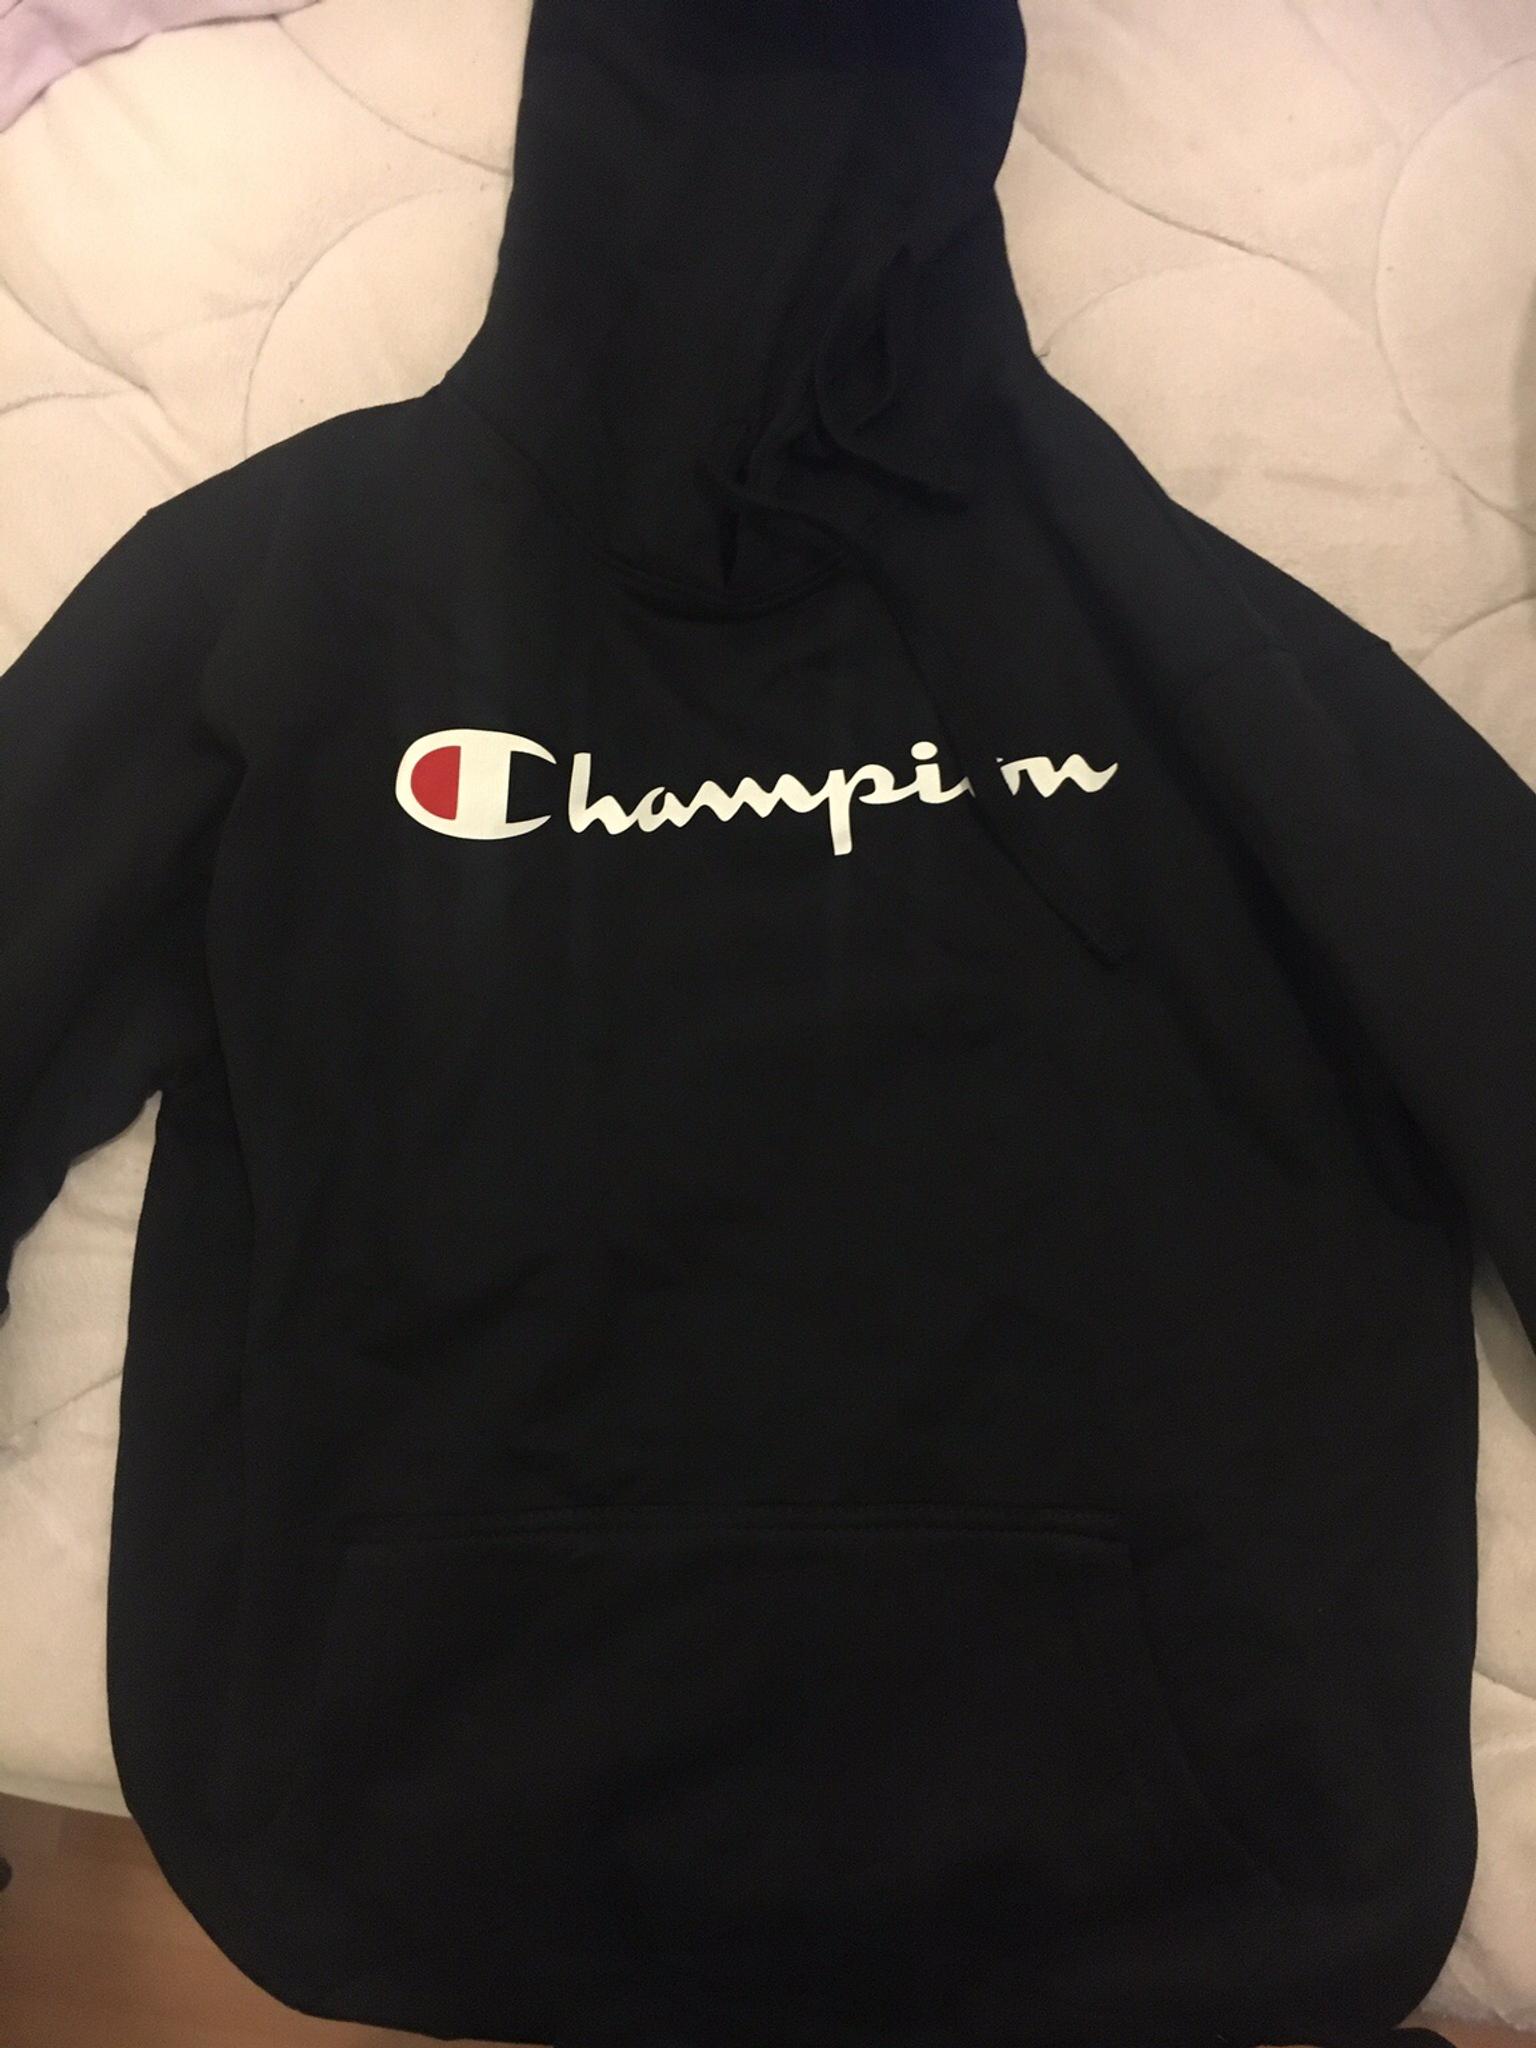 champion hoodie tk maxx